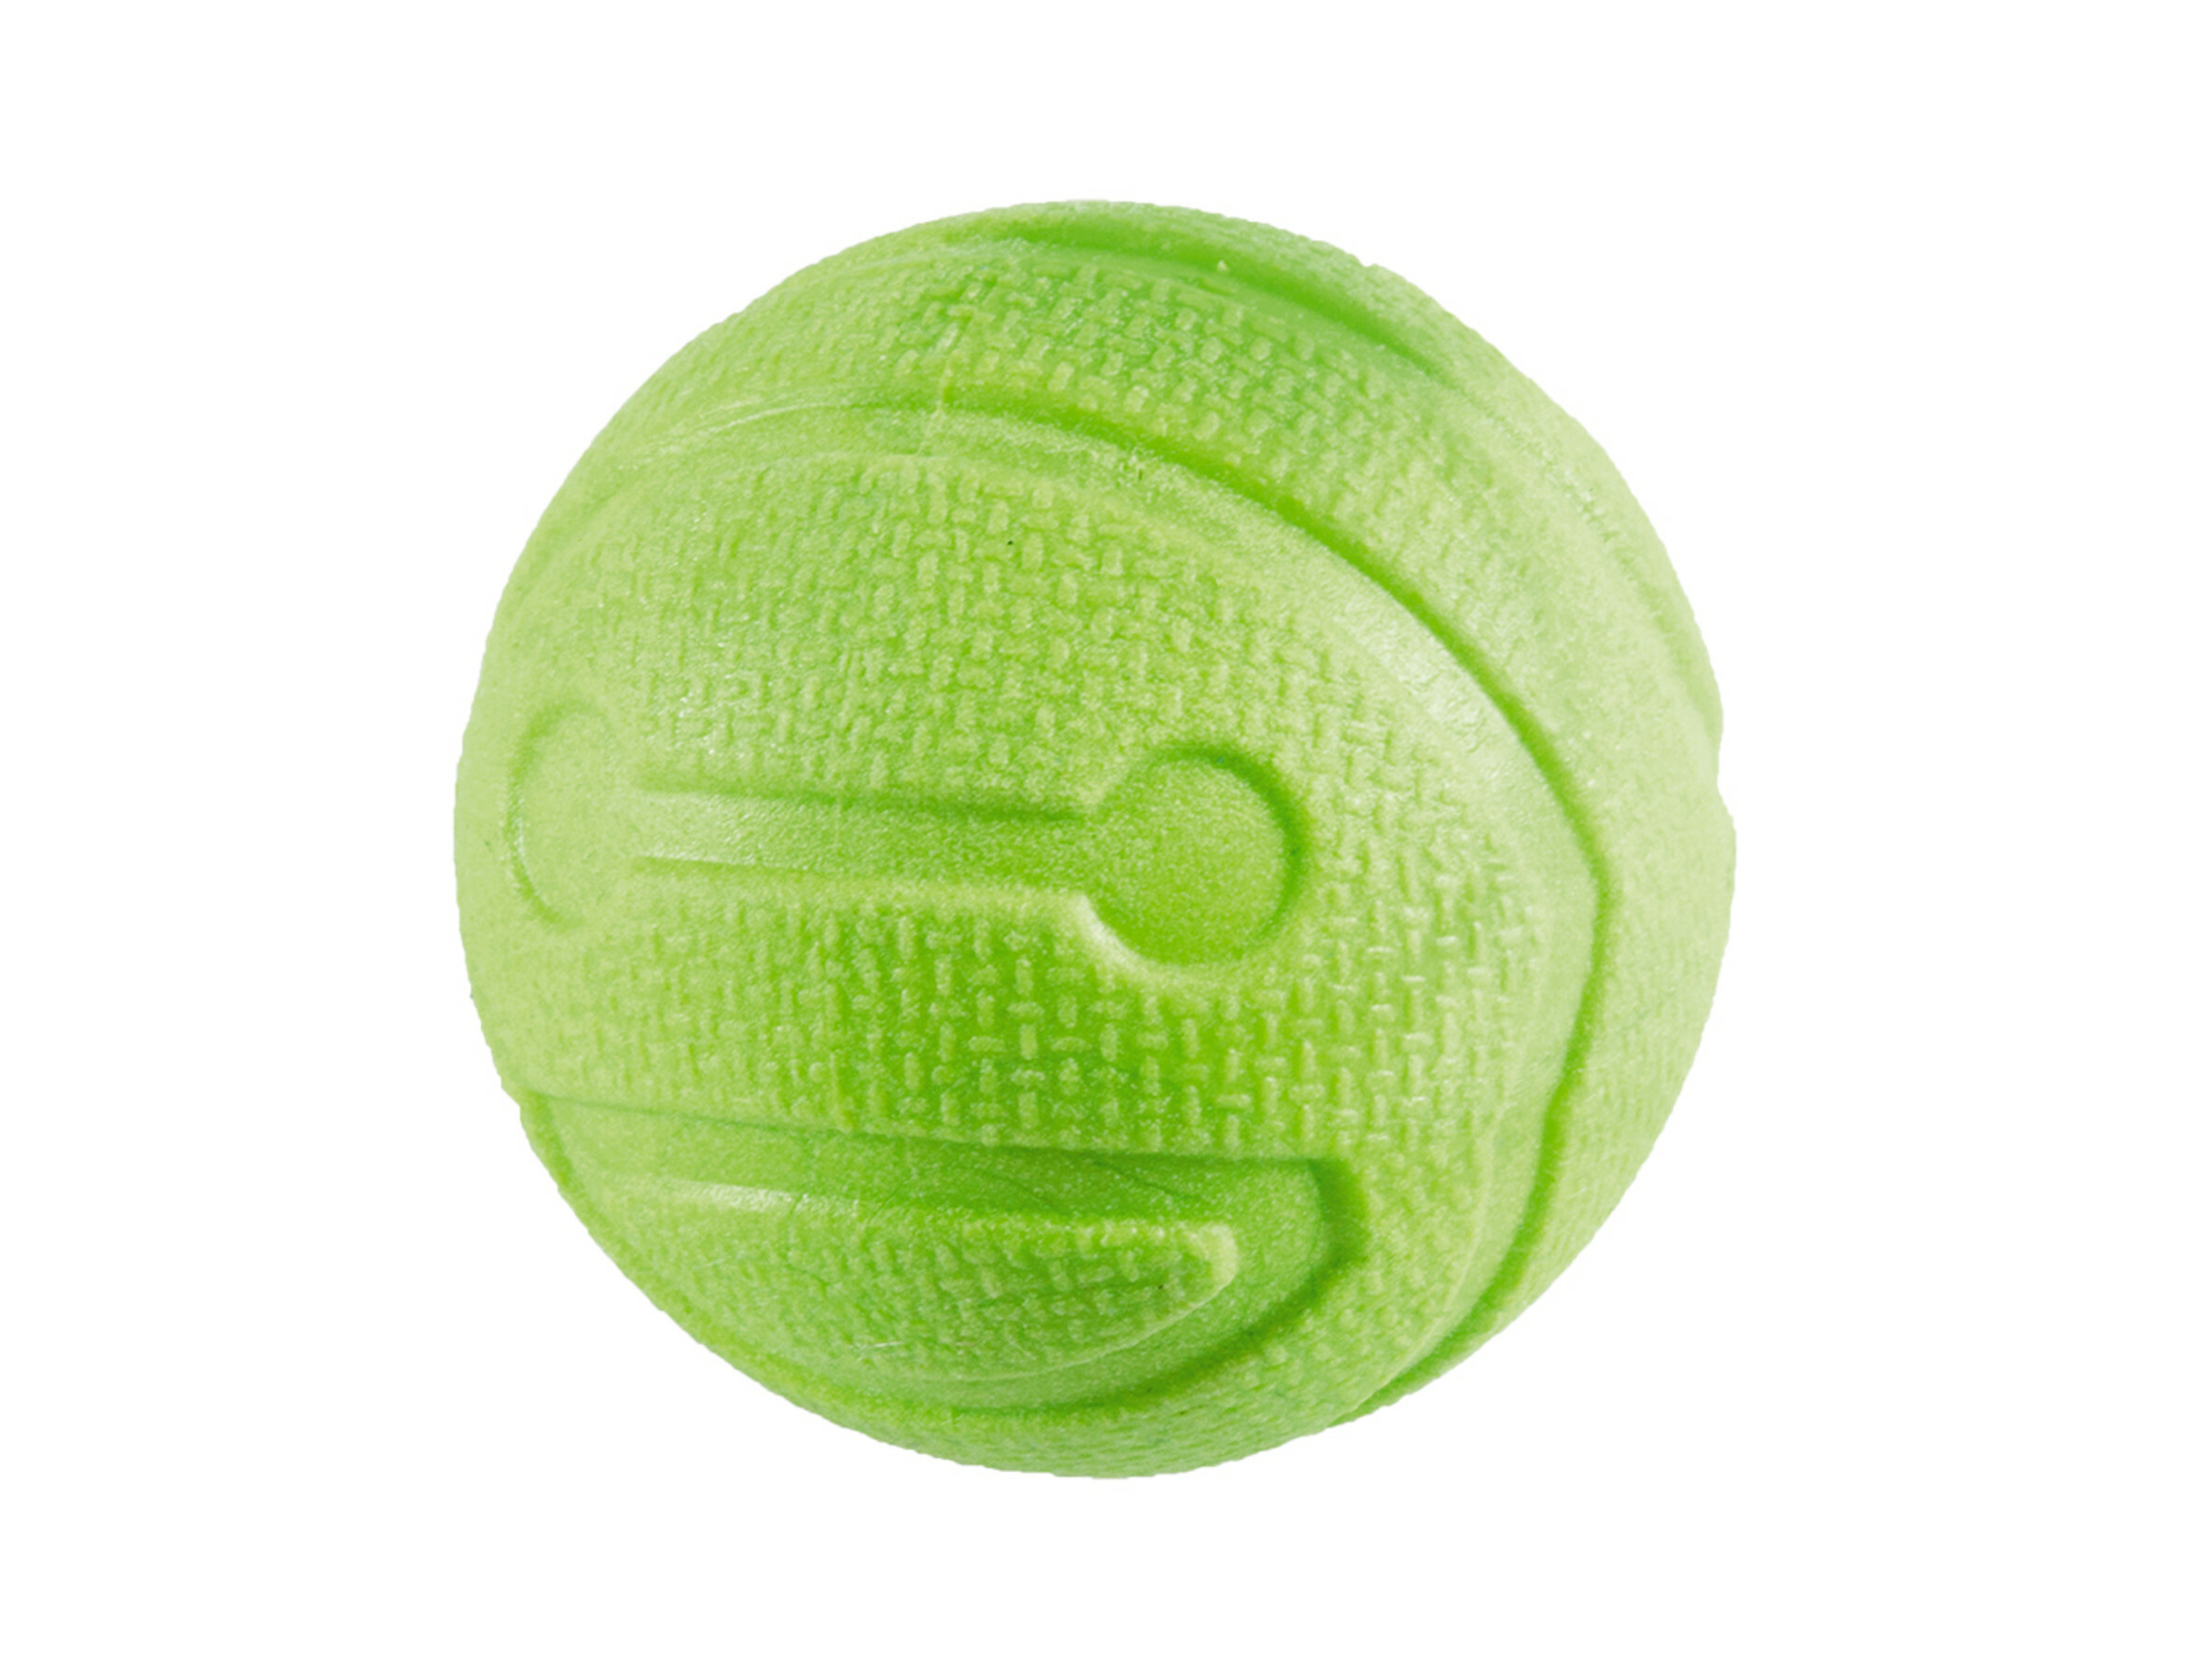 Wantrouwen Fantasie Tientallen Speelgoed Hond TPR Bal Green Apple 6,4cm | Bopets